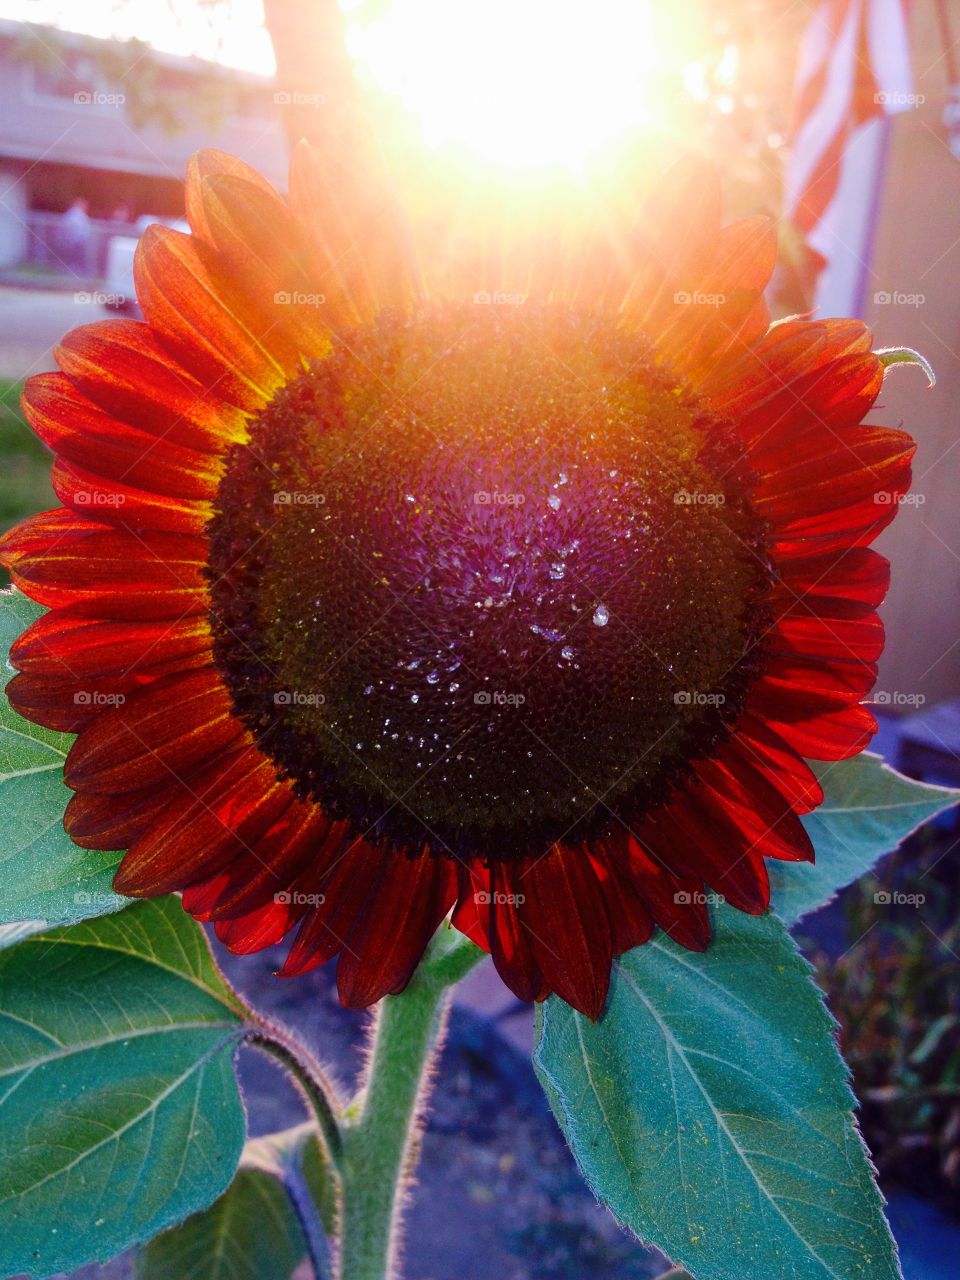 Sun sunflower. 